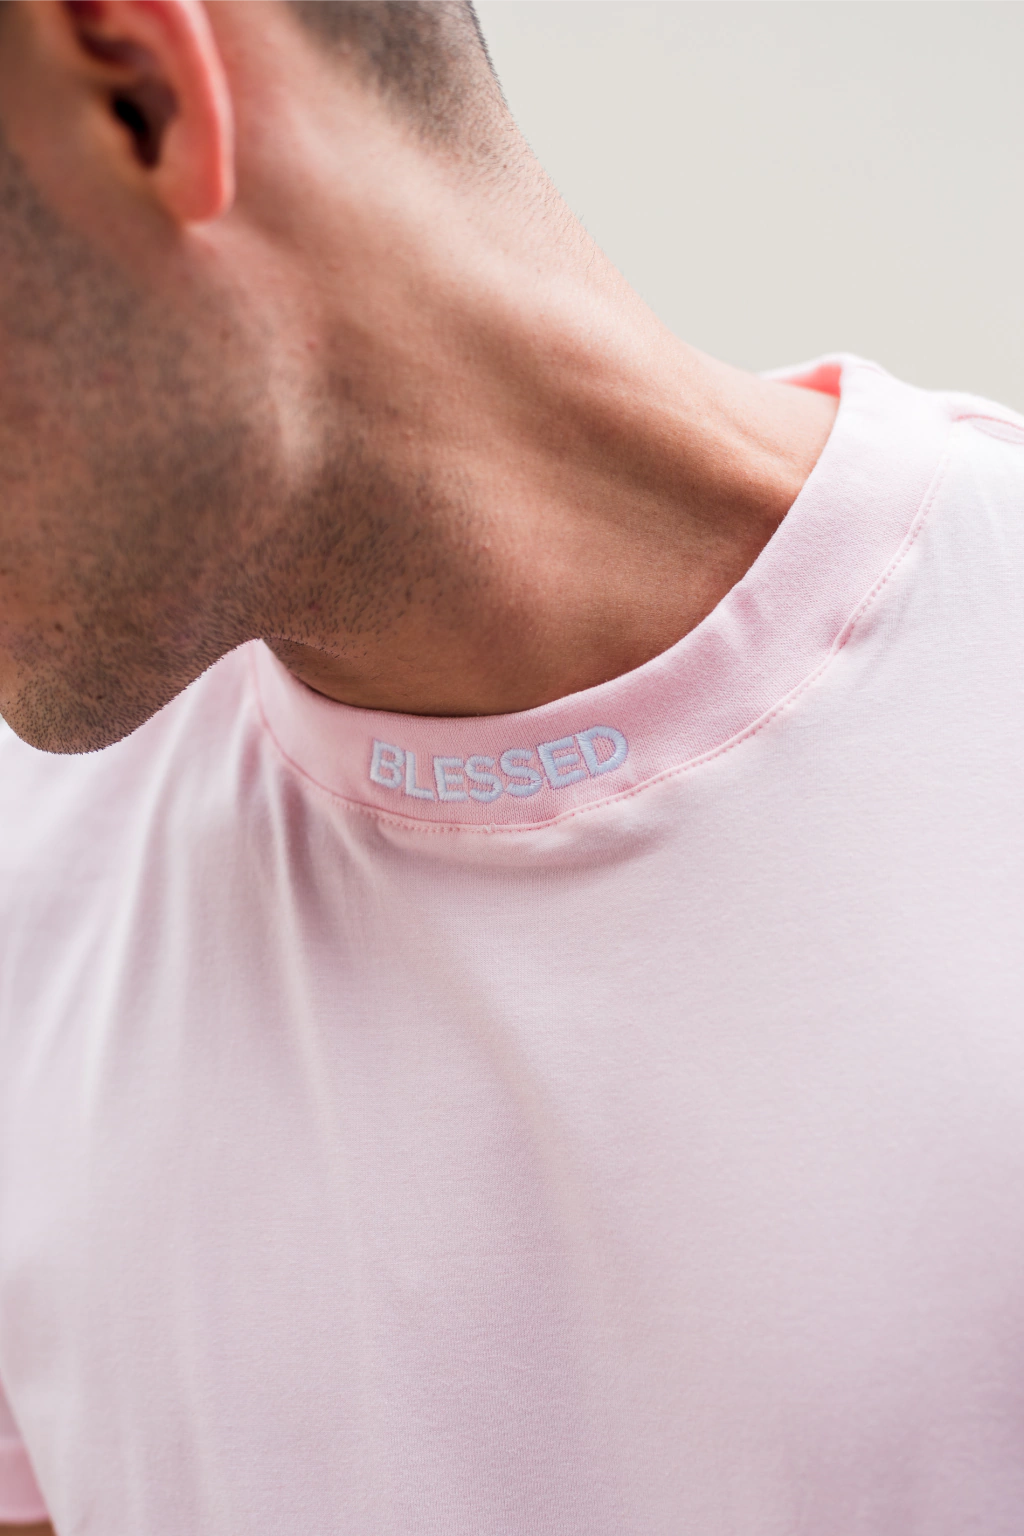 Camiseta Longline Premium Collar Blessed